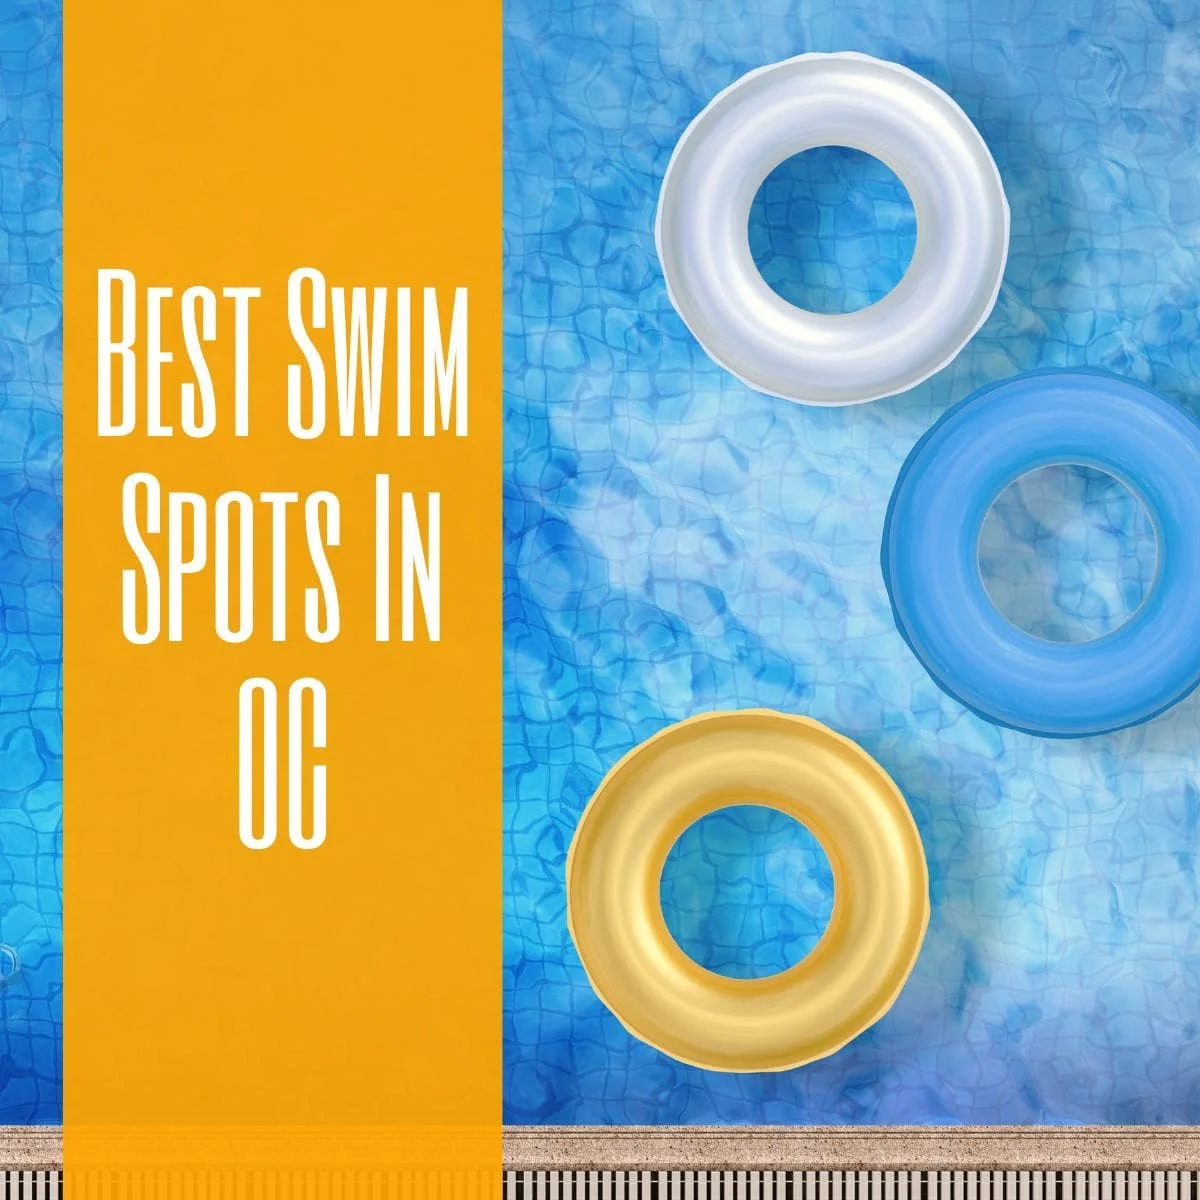 Best Swim Spots In OC